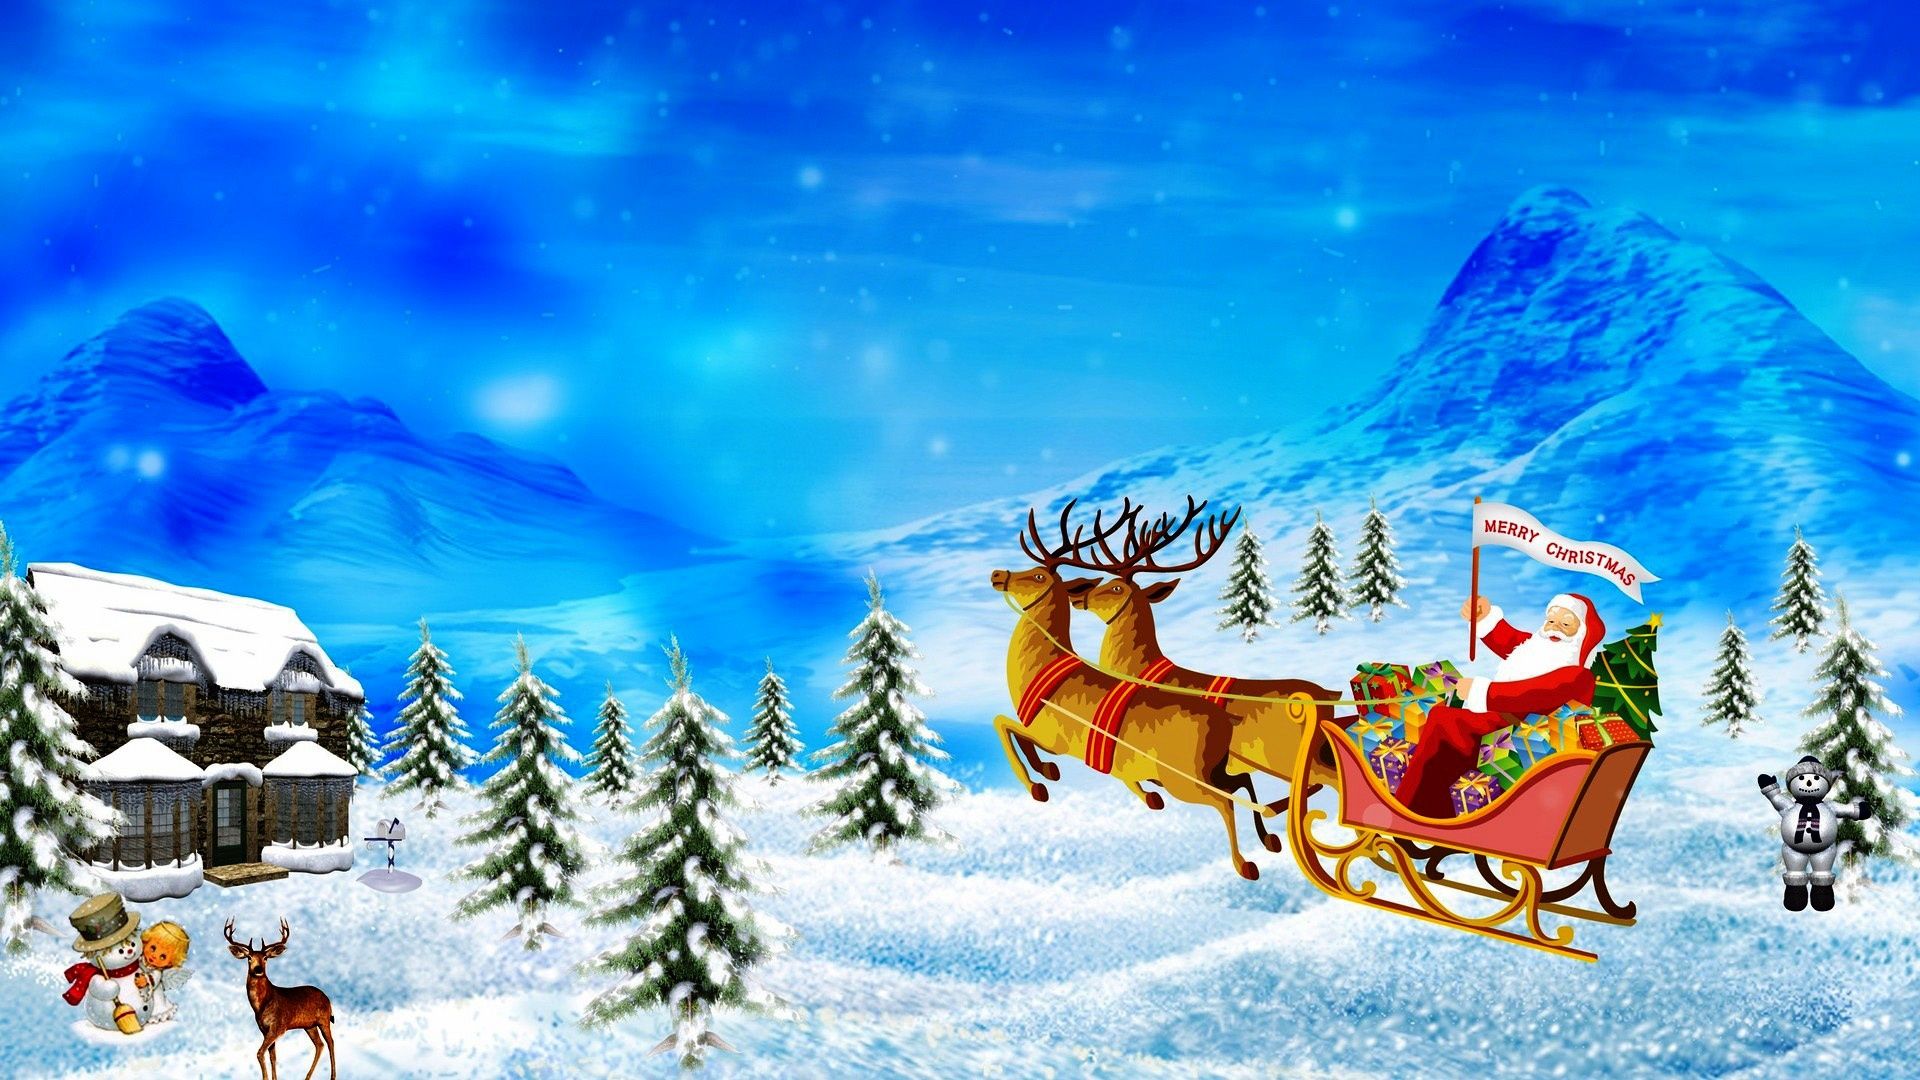 Animated Christmas Wallpaper For 2015